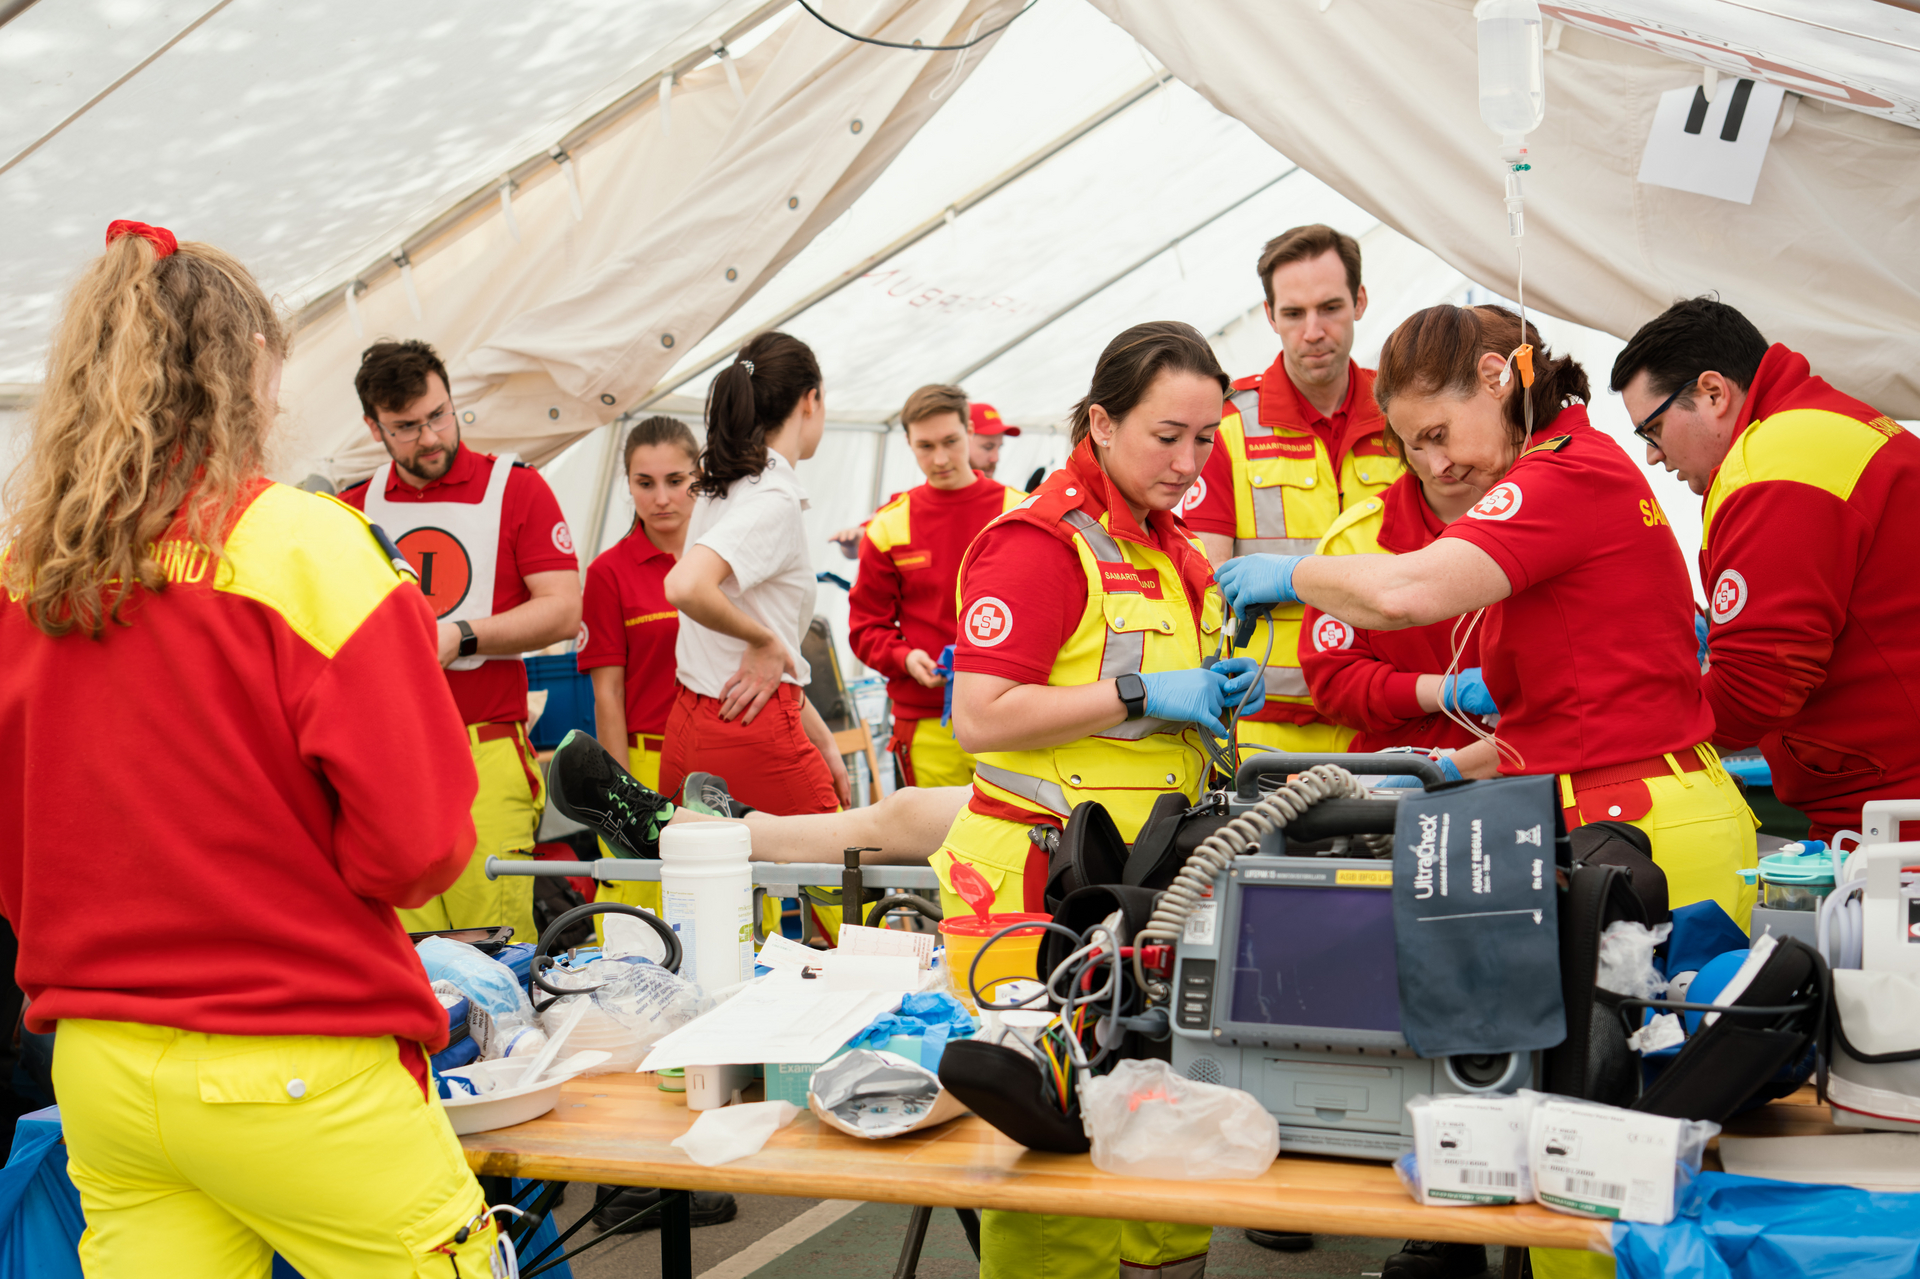 Team von Rettungssanitäter:innen bei Veranstaltung im Einsatzzelt